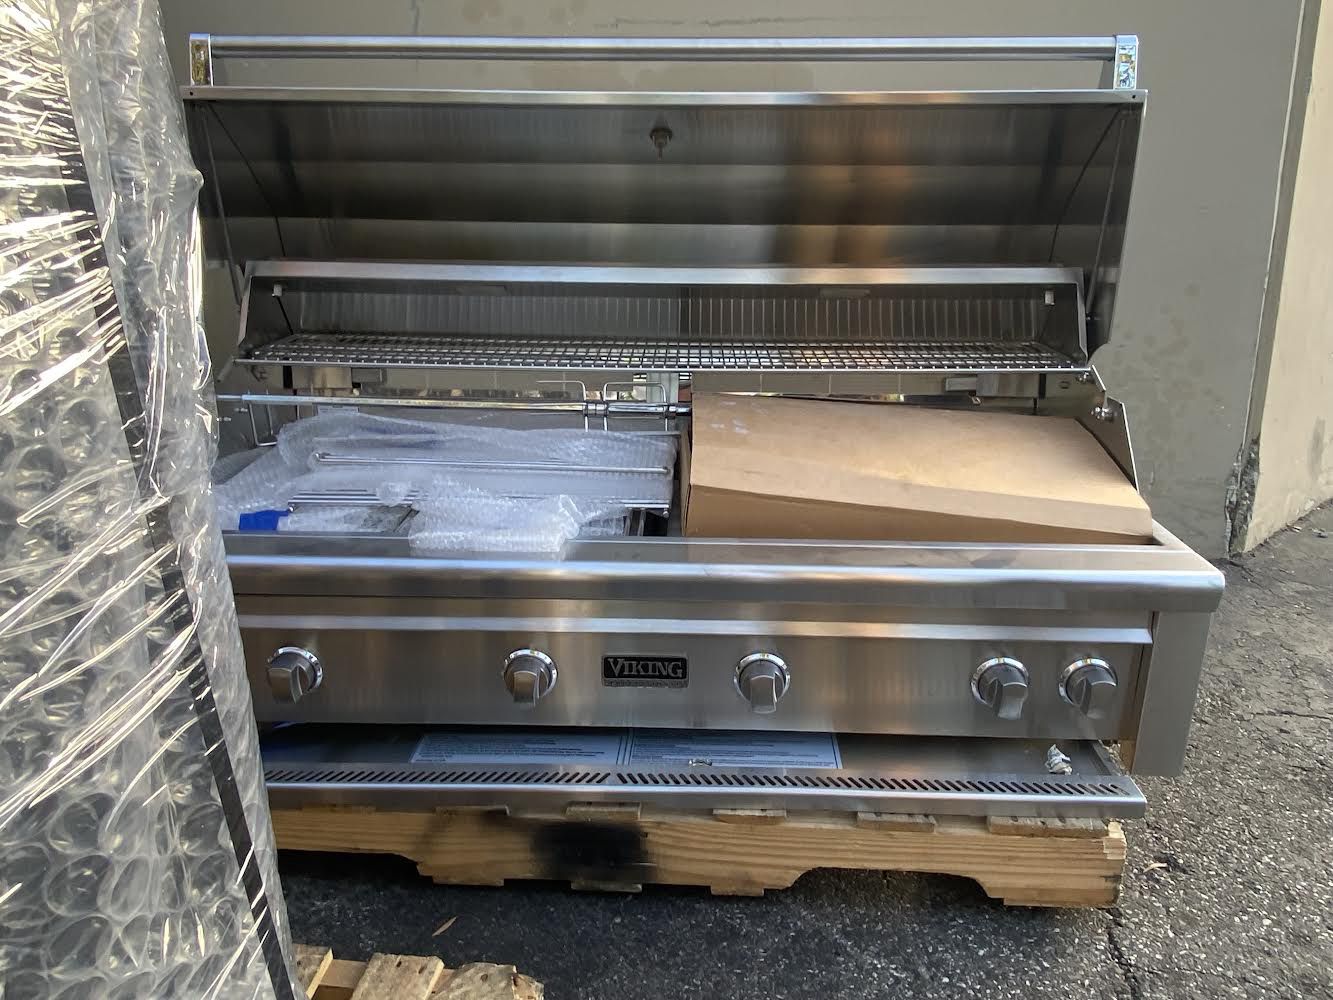 Viking grill  54 Inch Model # VQGI554 